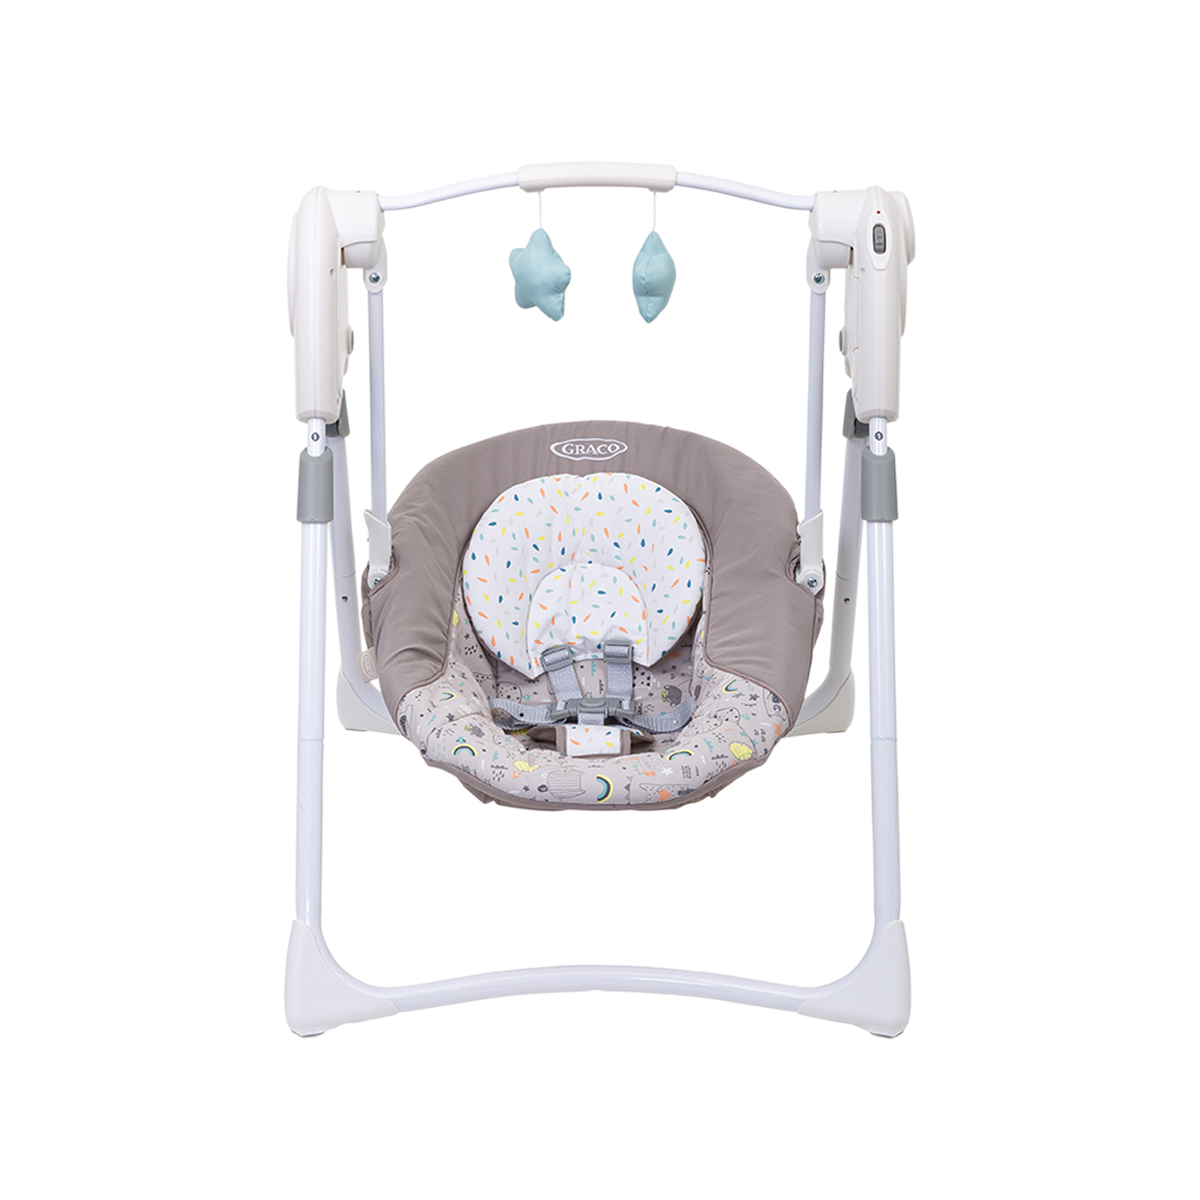 Frontansicht der elektrischen Babyschaukel Graco Slim Spaces